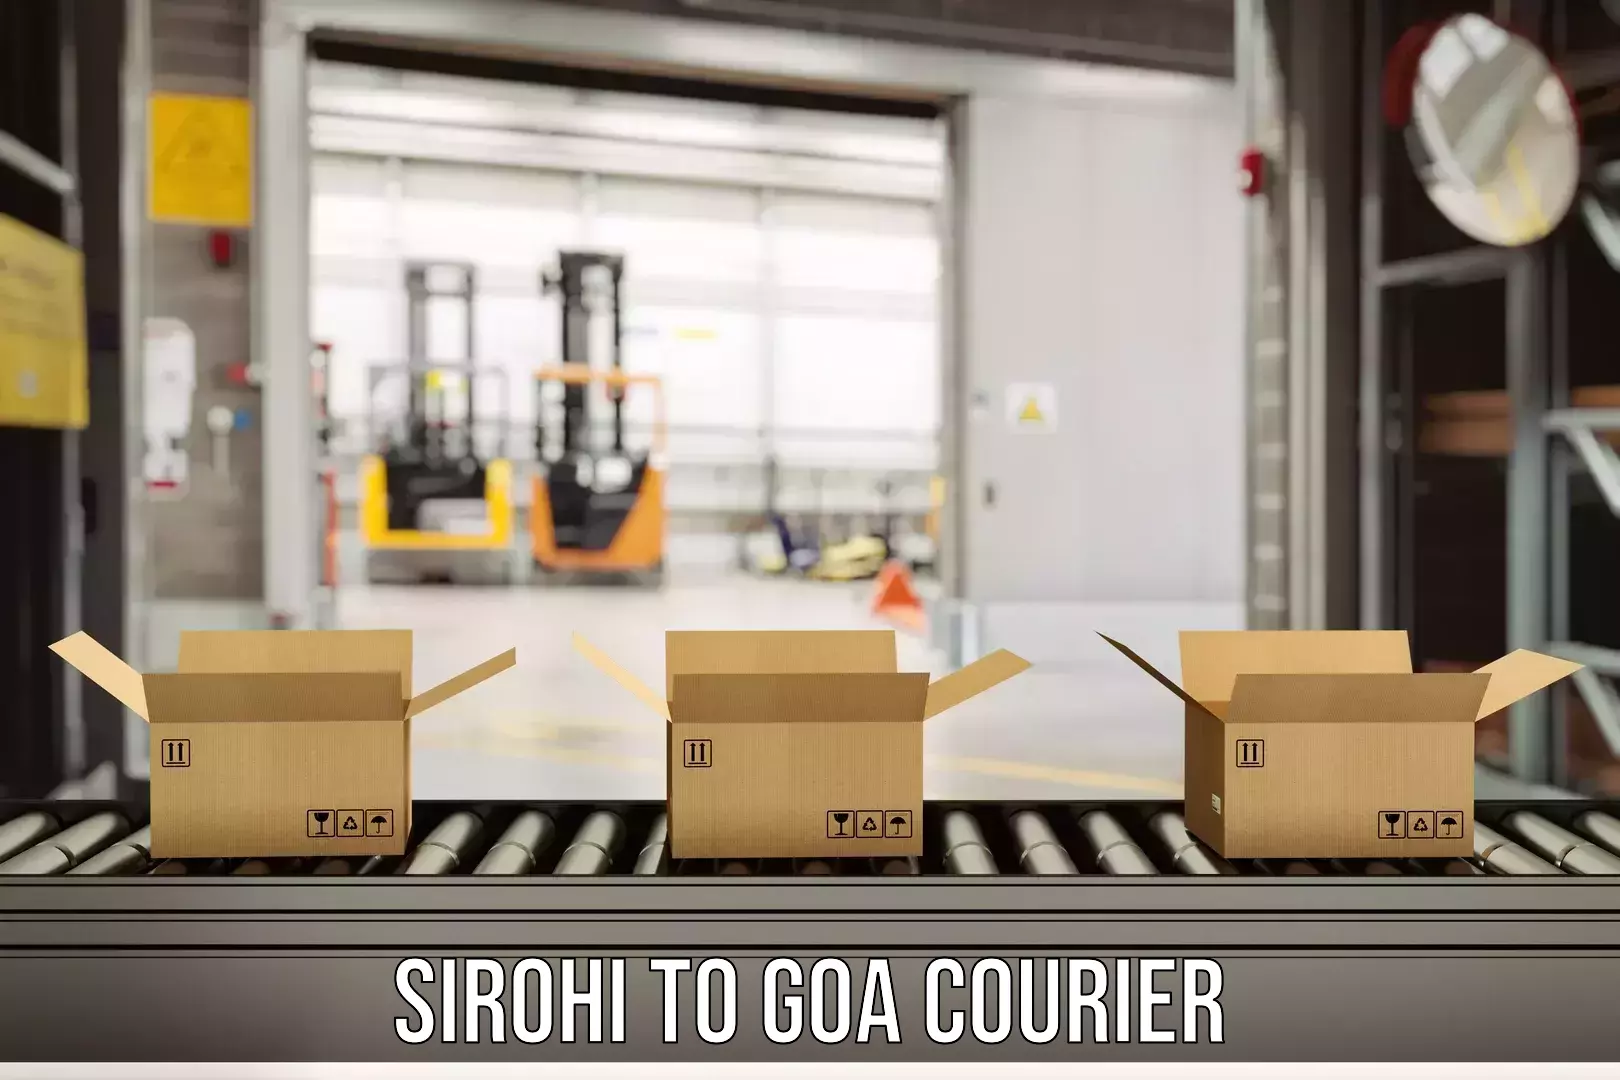 Courier service comparison Sirohi to Panaji